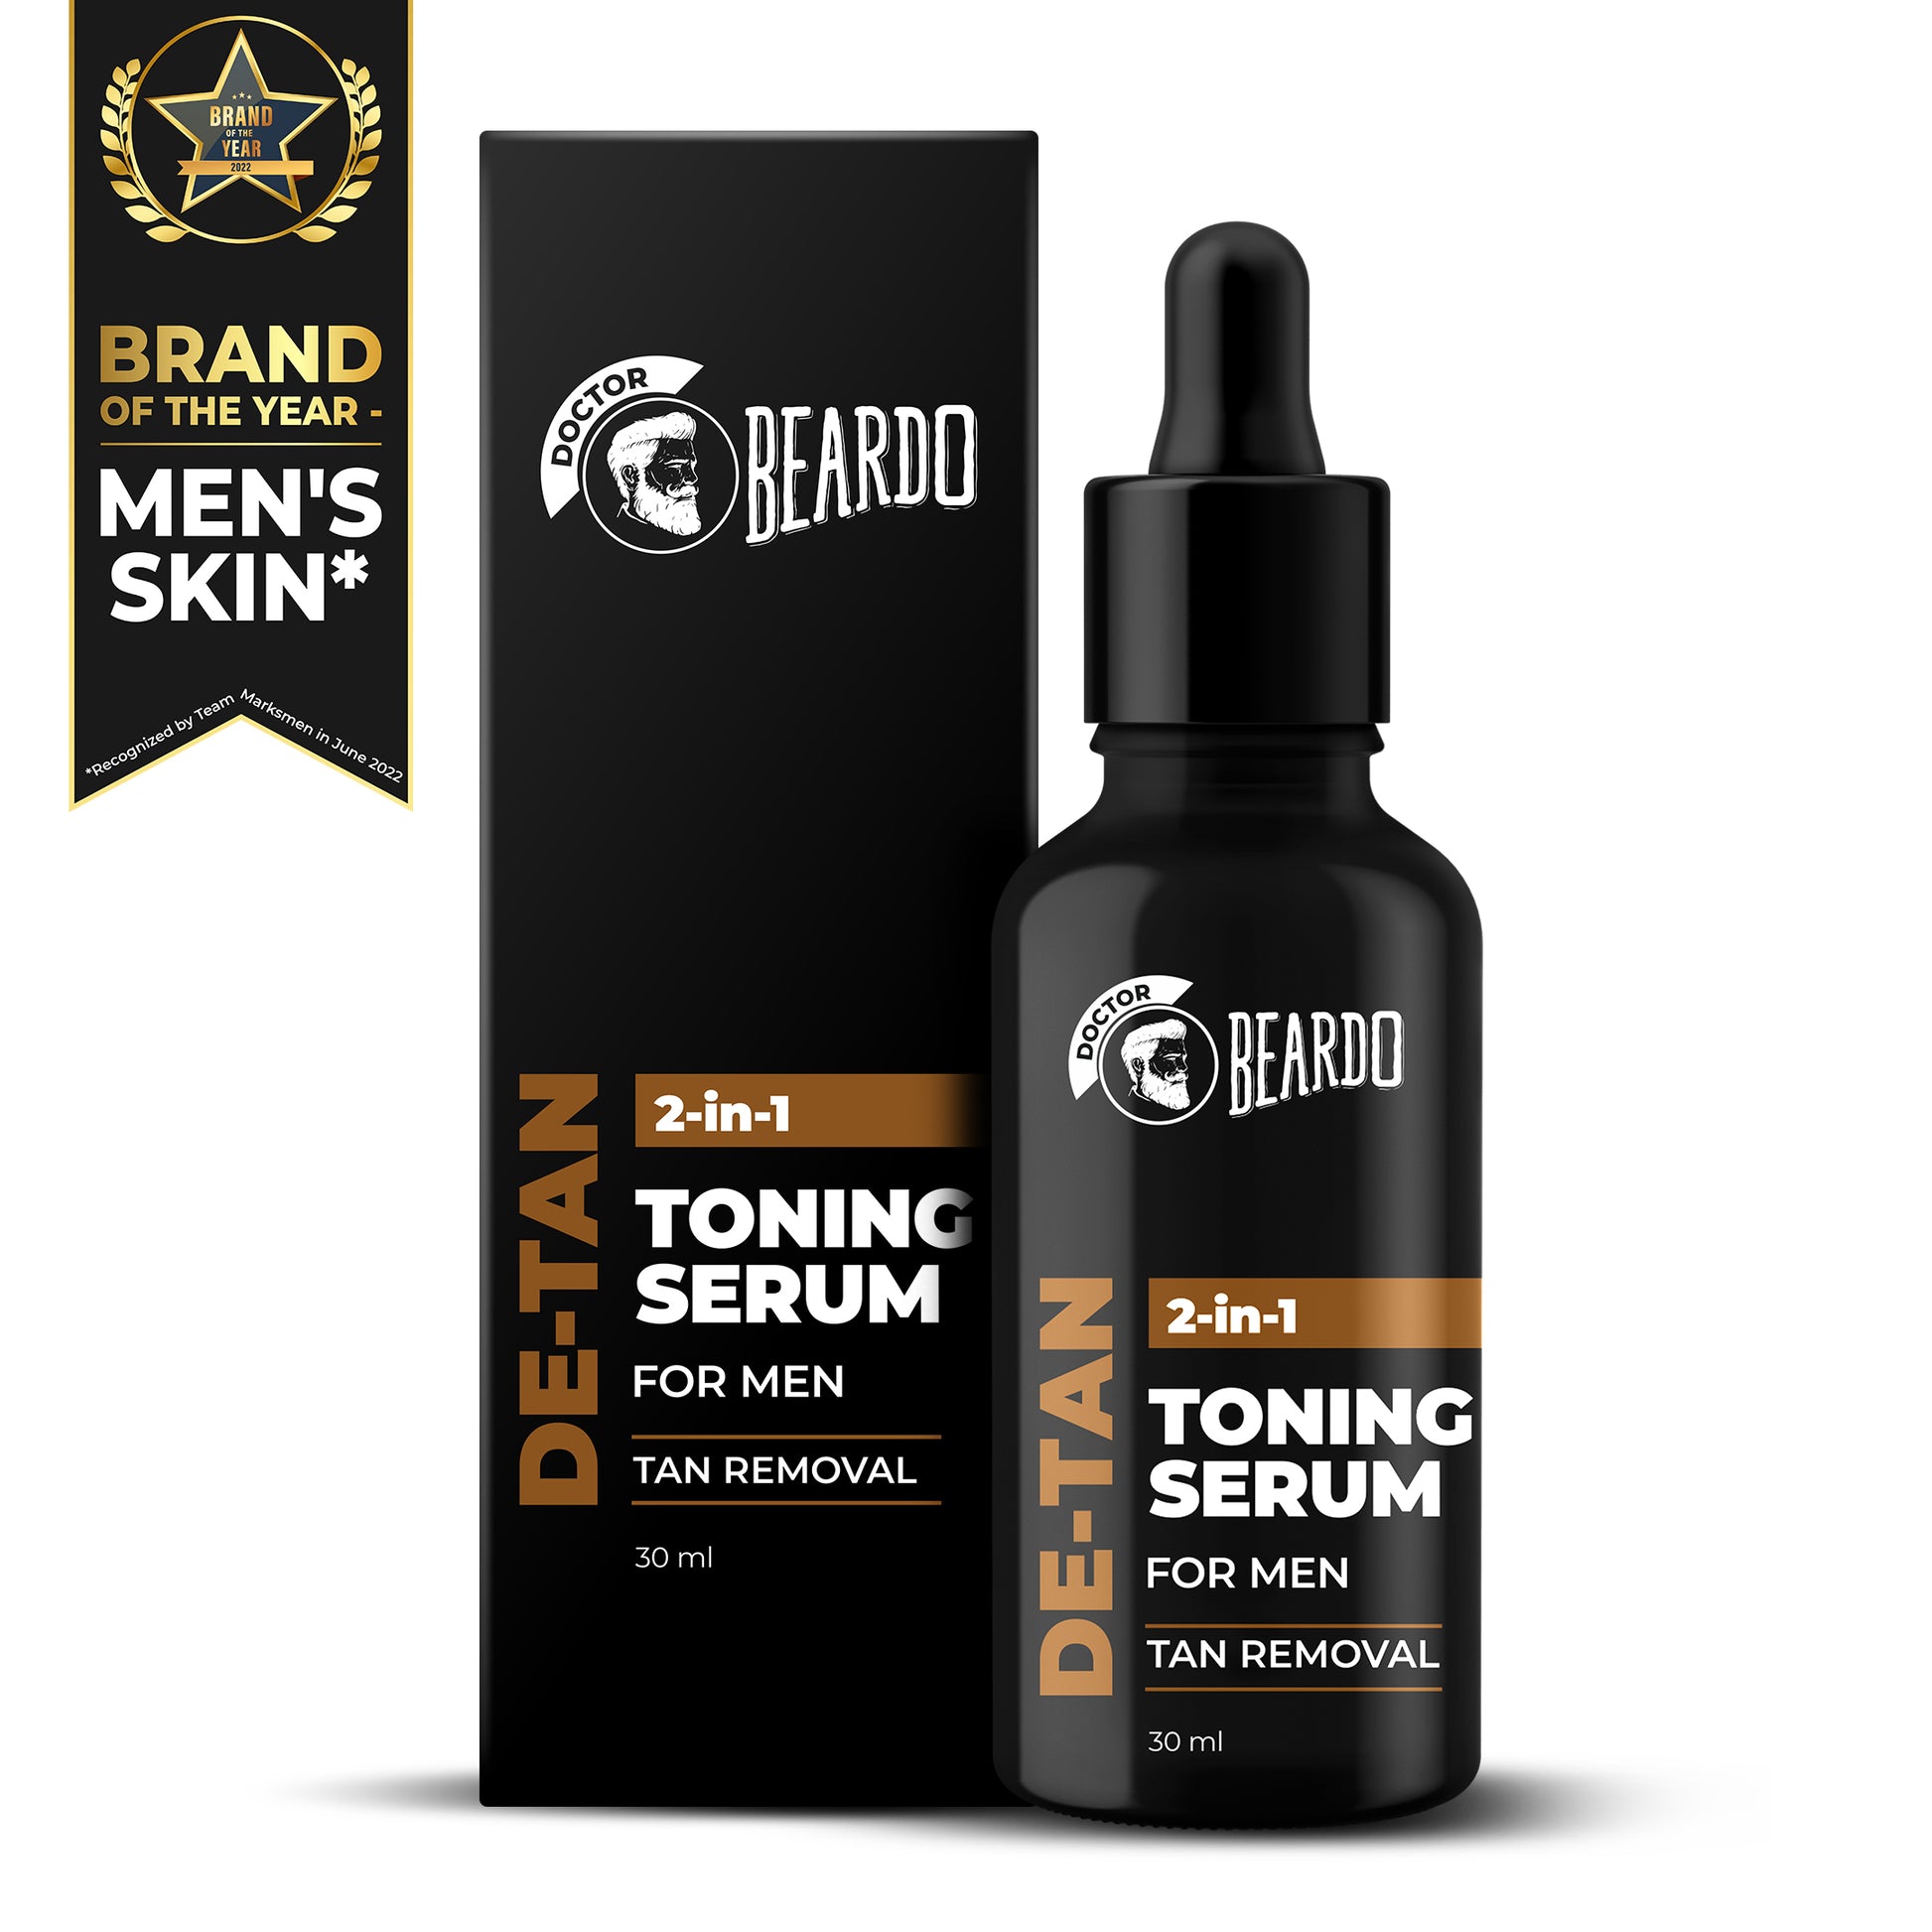 Beardo De-Tan 2 in 1 Toning Serum, de tan serum, serum for tan removal, tan removal serum, best serum for tan removal, best tan removal serum